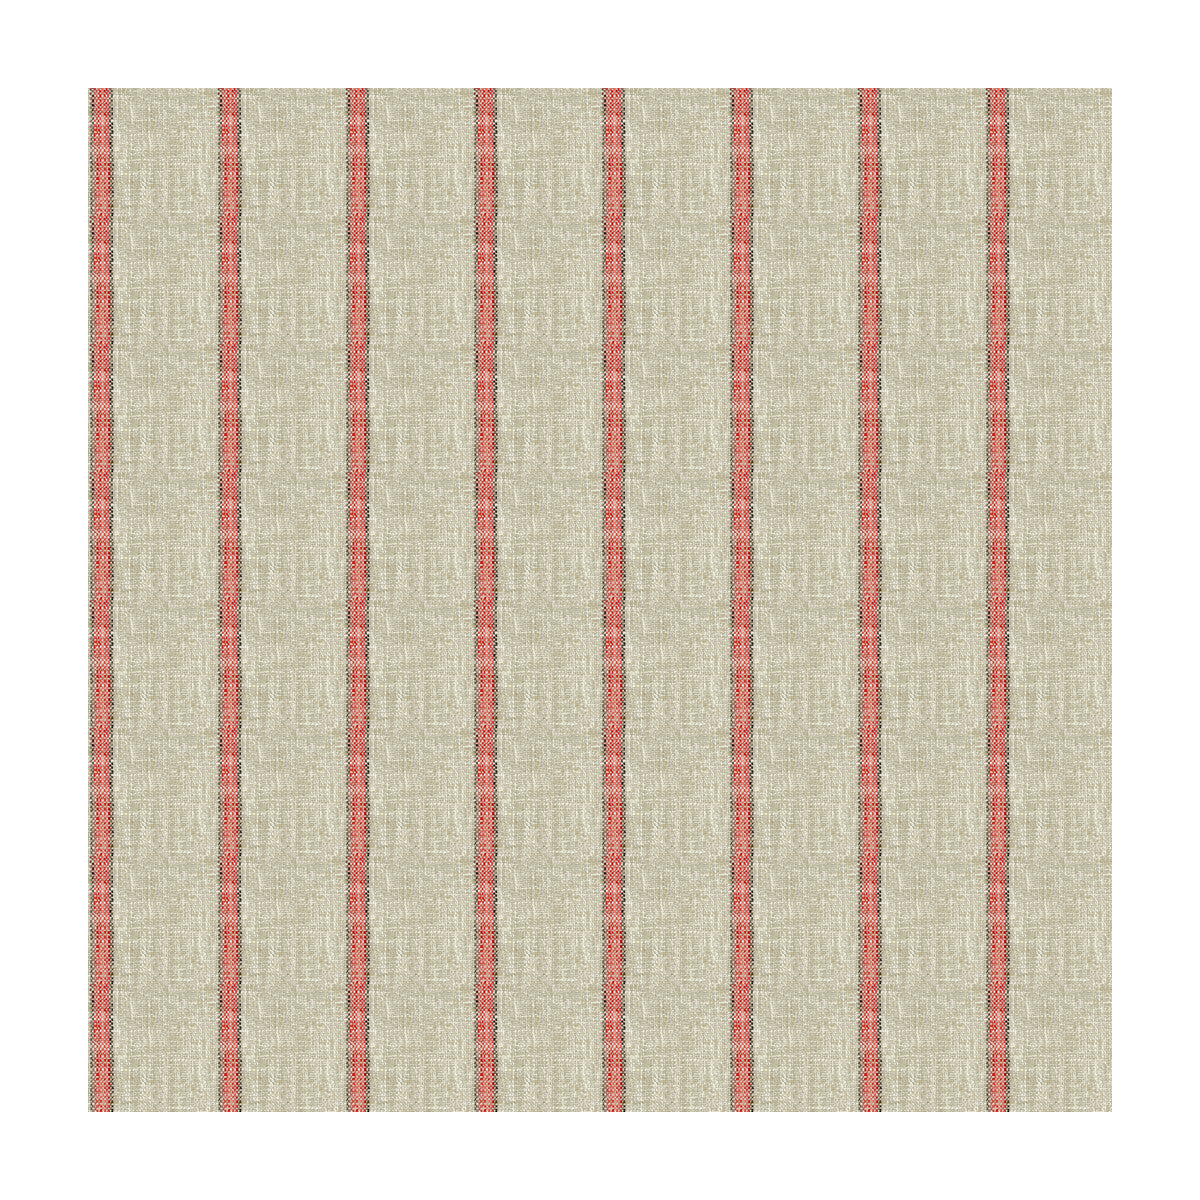 Kravet Basics fabric in 34087-716 color - pattern 34087.716.0 - by Kravet Basics